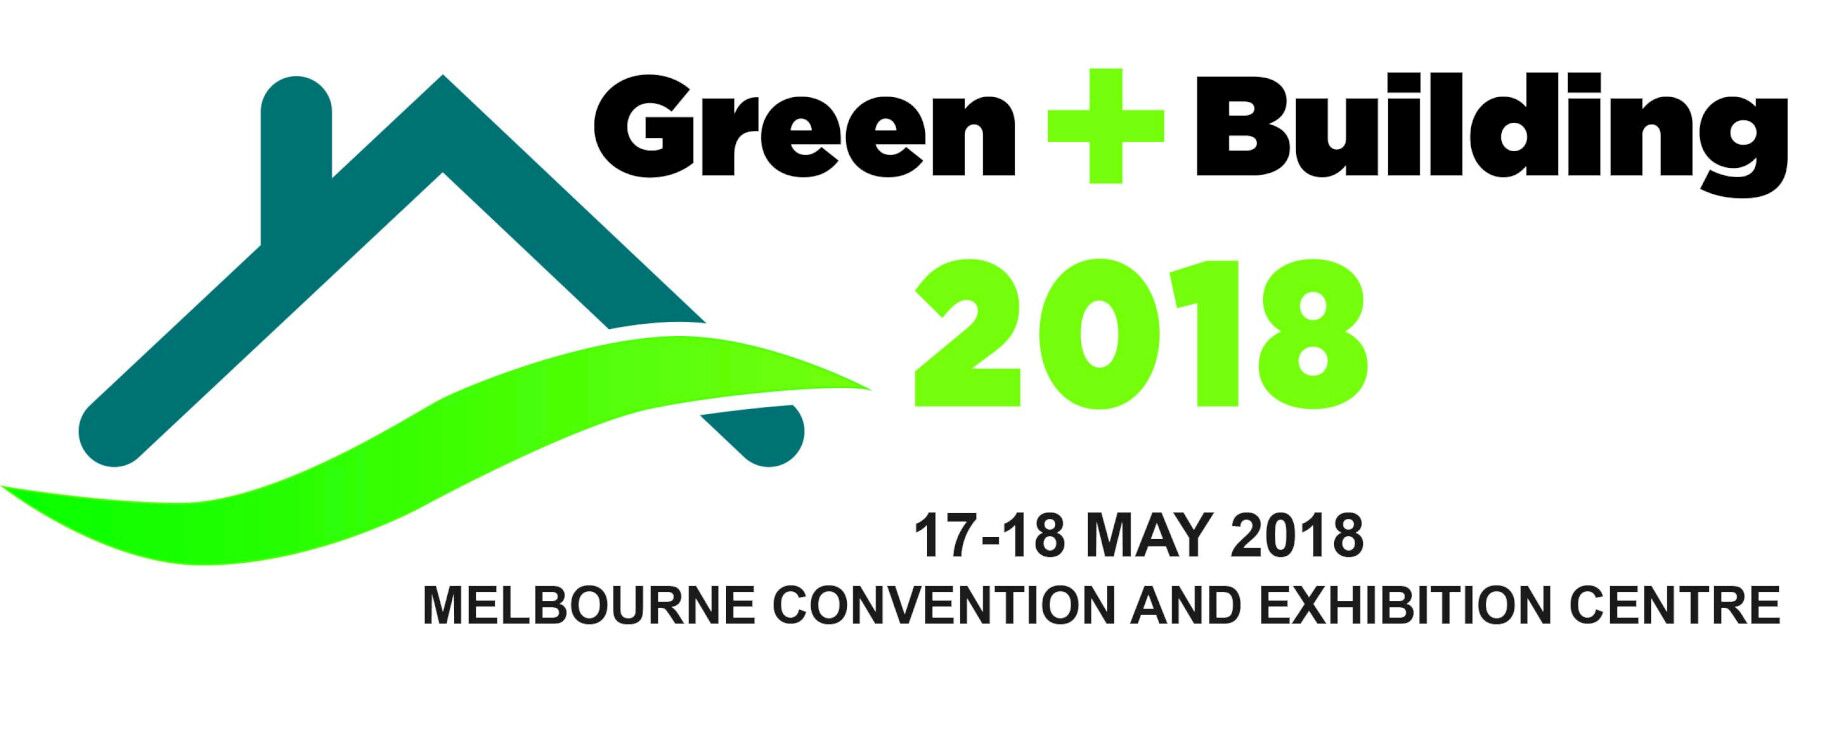 2018年澳大利亚绿色建筑展览会 Green + Building 2018